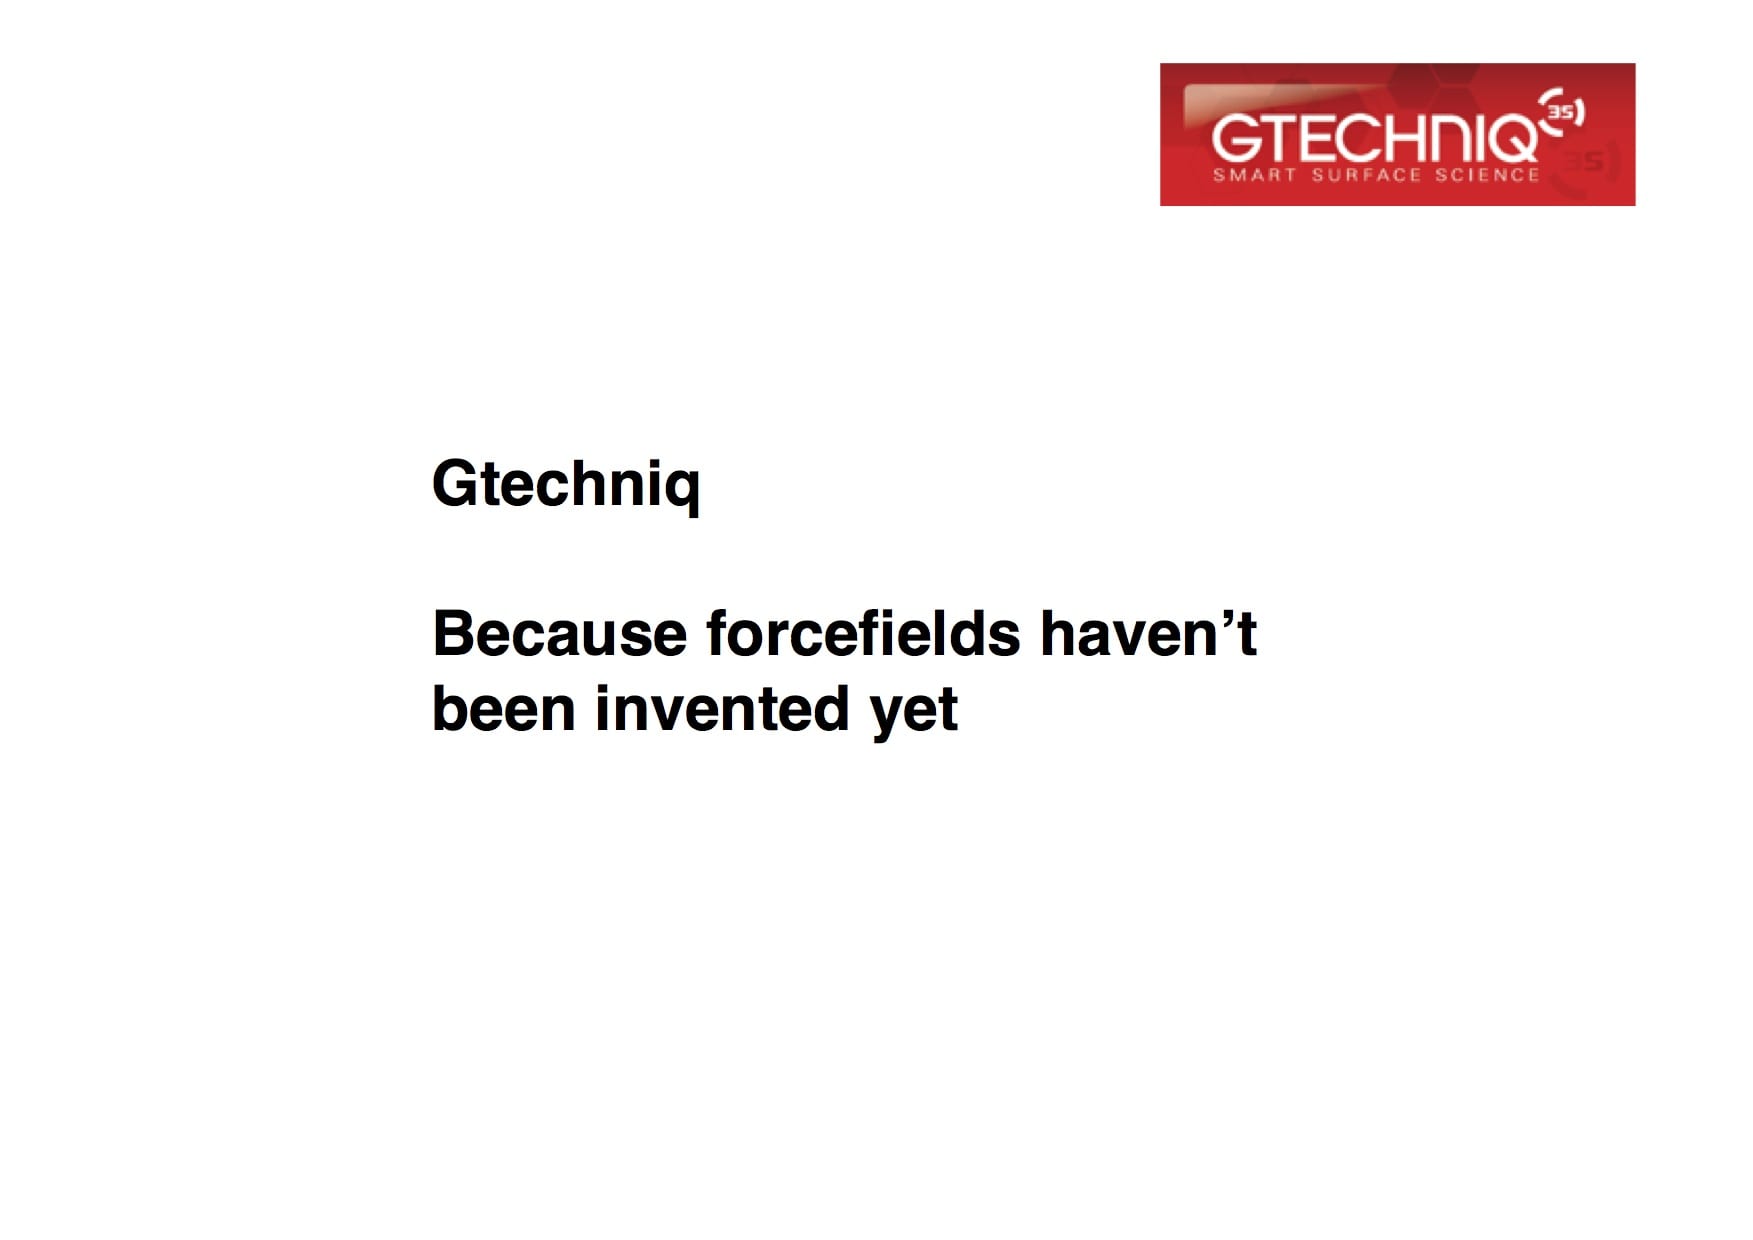 Forcefields - Gtechniq